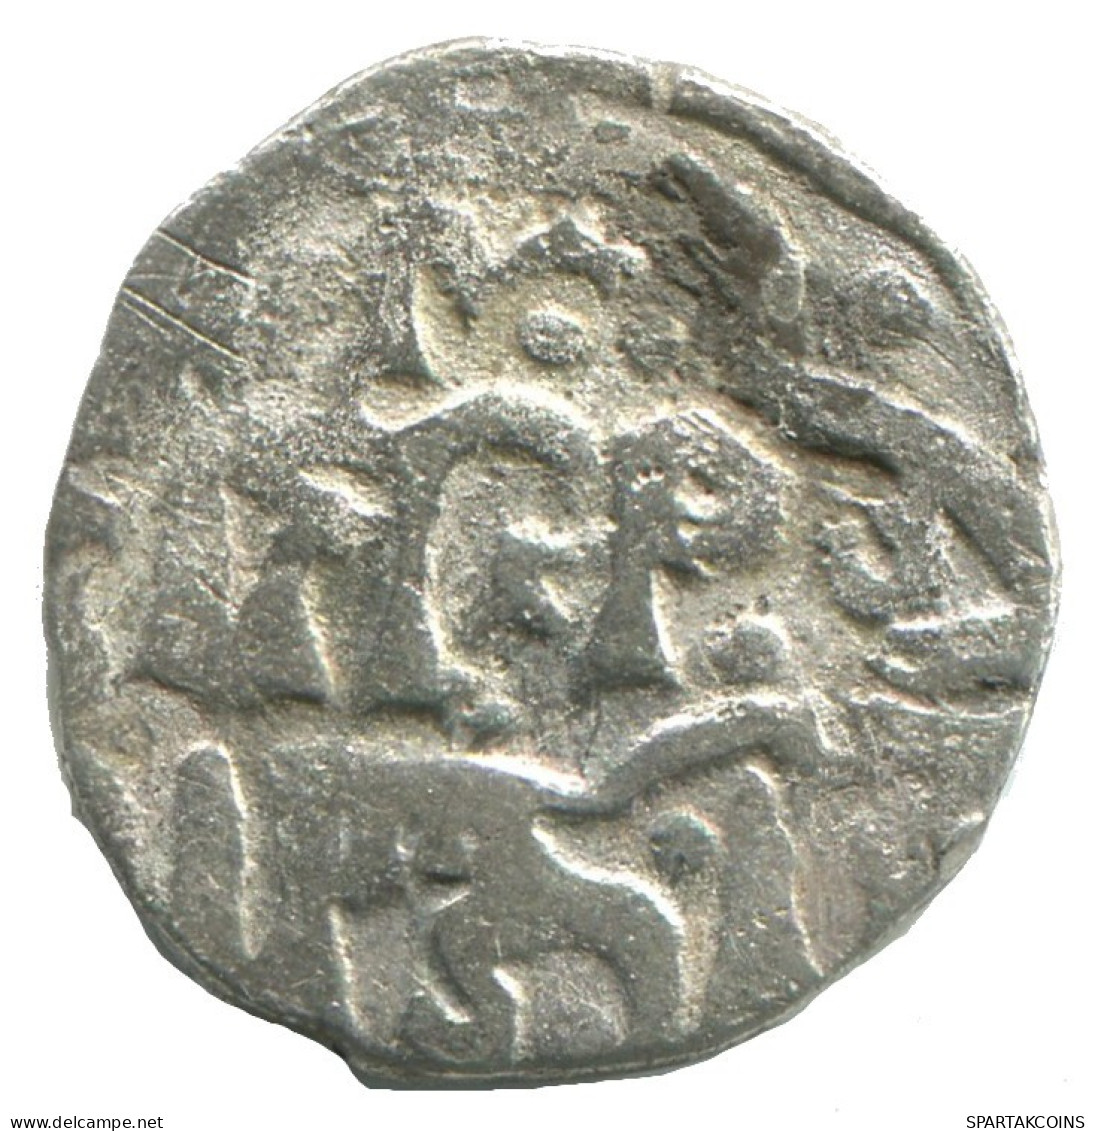 GOLDEN HORDE Silver Dirham Medieval Islamic Coin 1.5g/16mm #NNN2019.8.E.A - Islamic